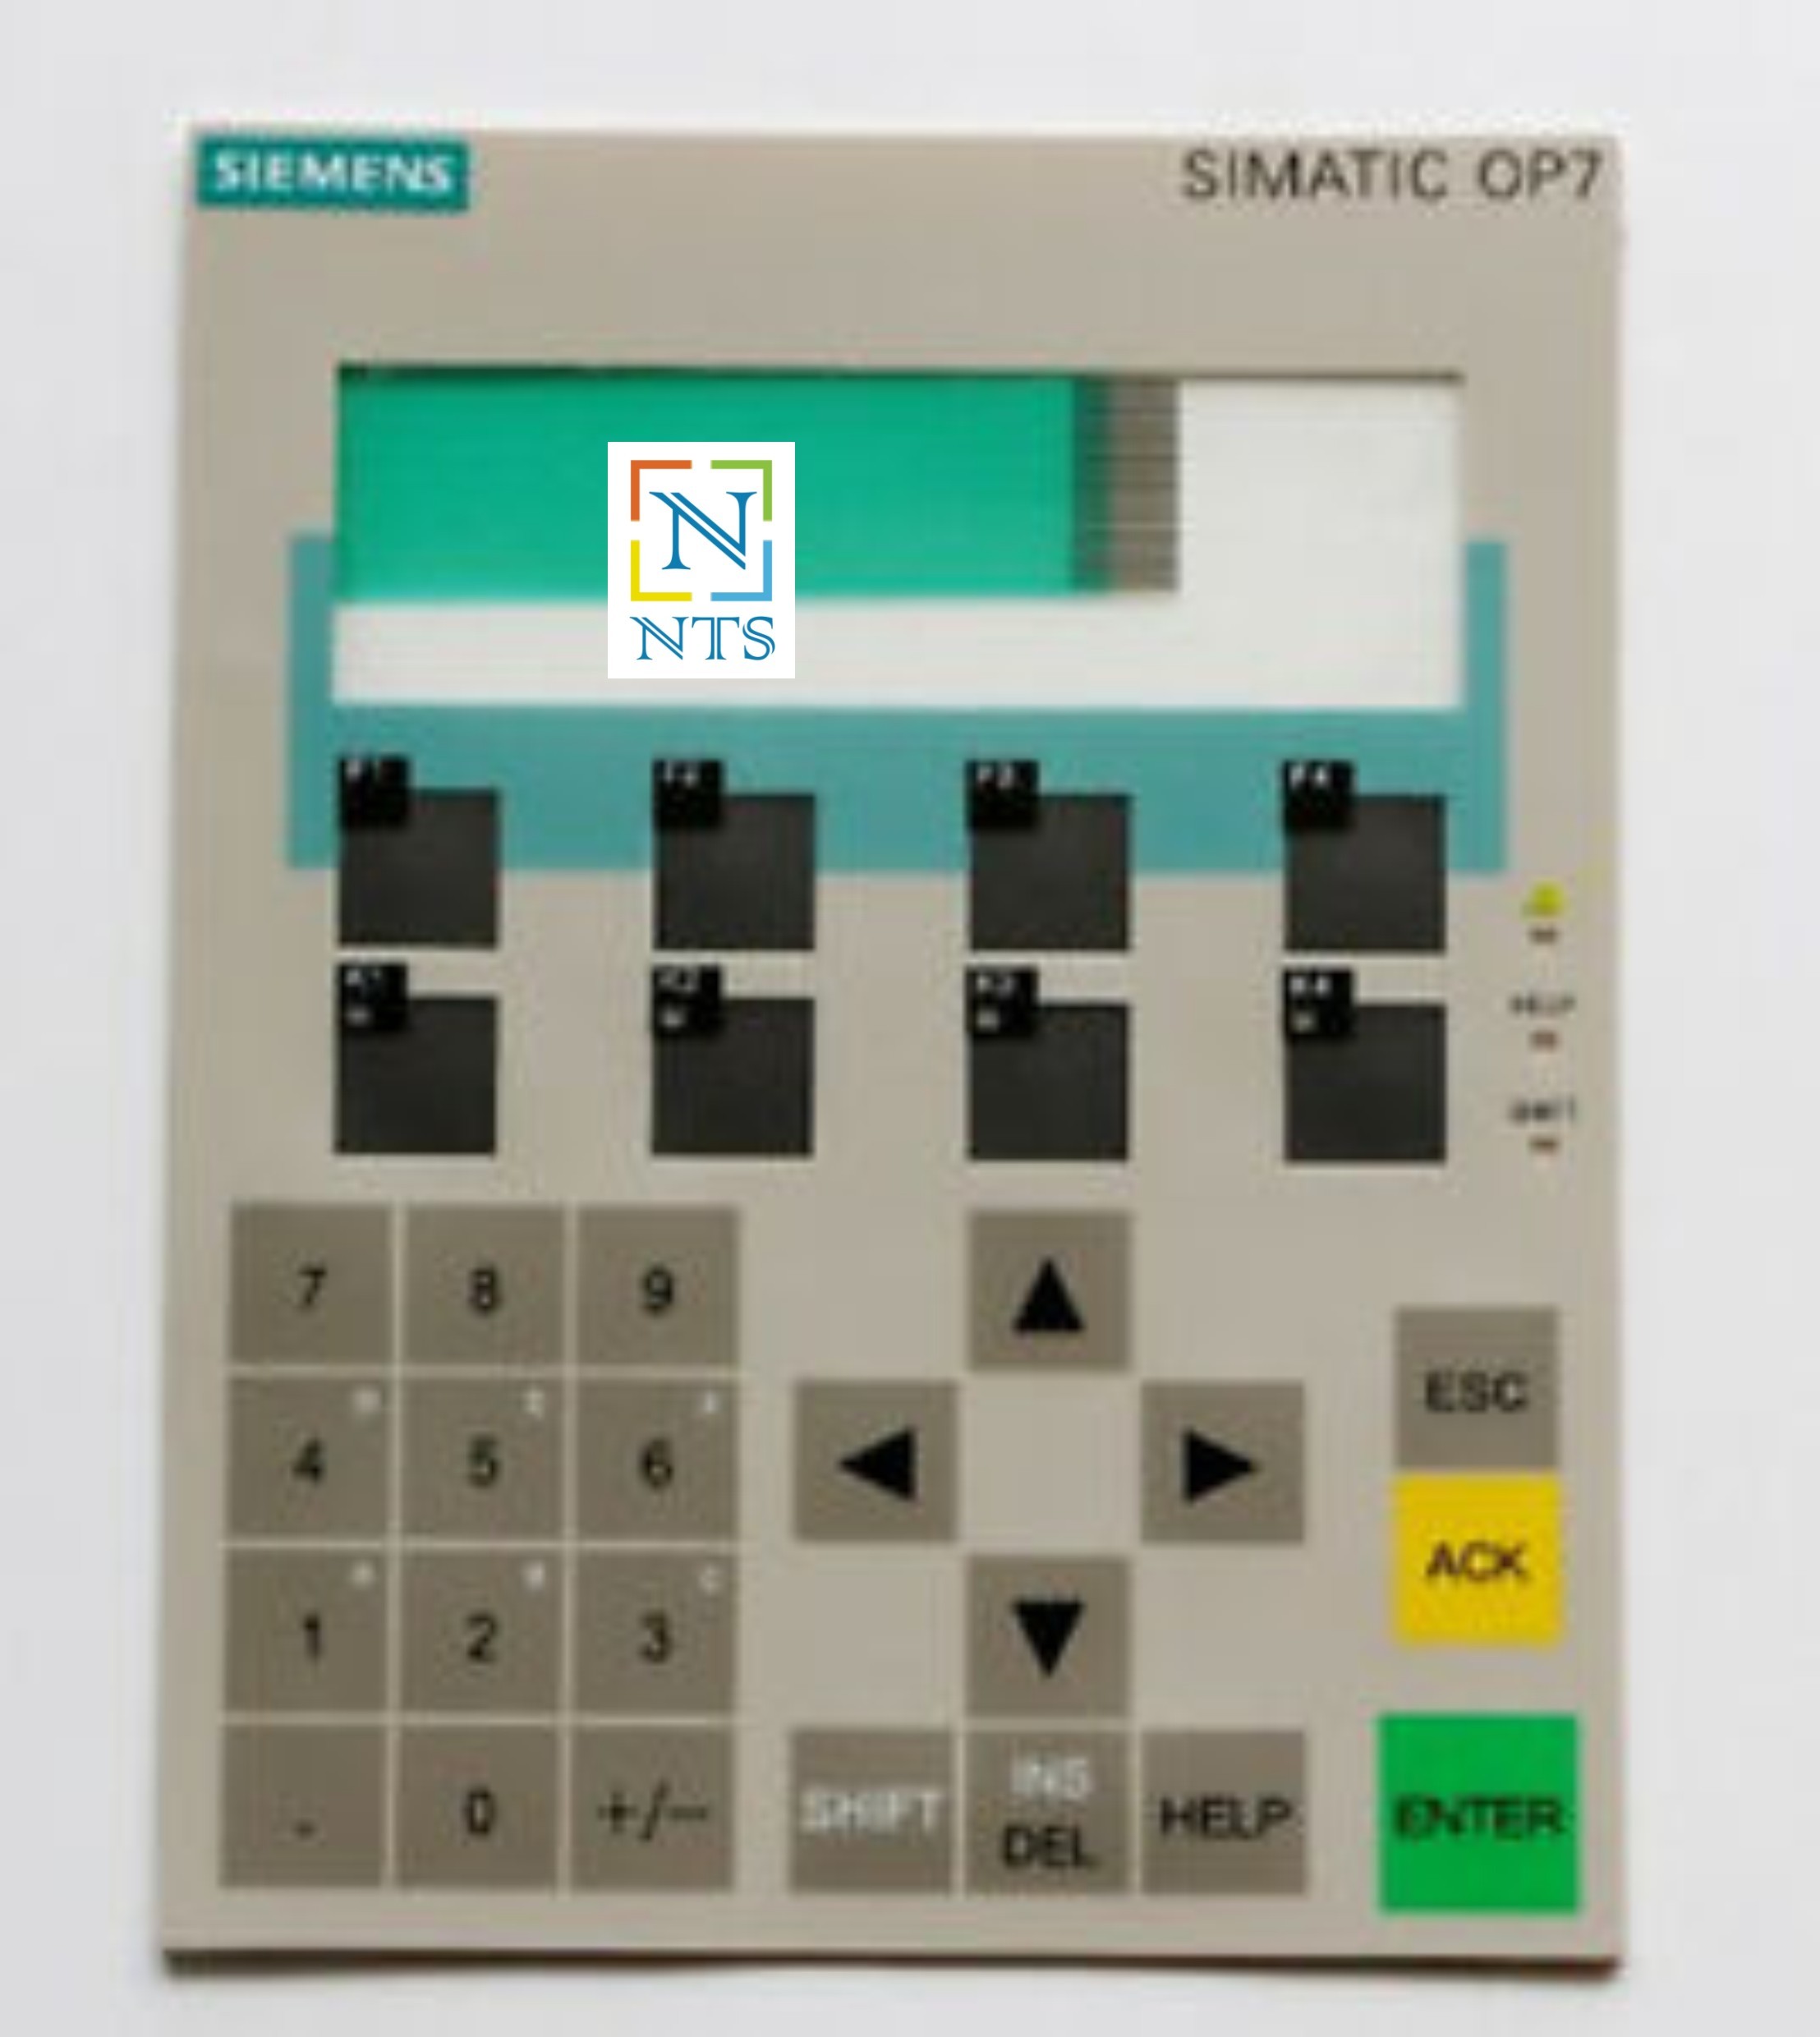 Body with Keypad for Siemens OP7 HMI